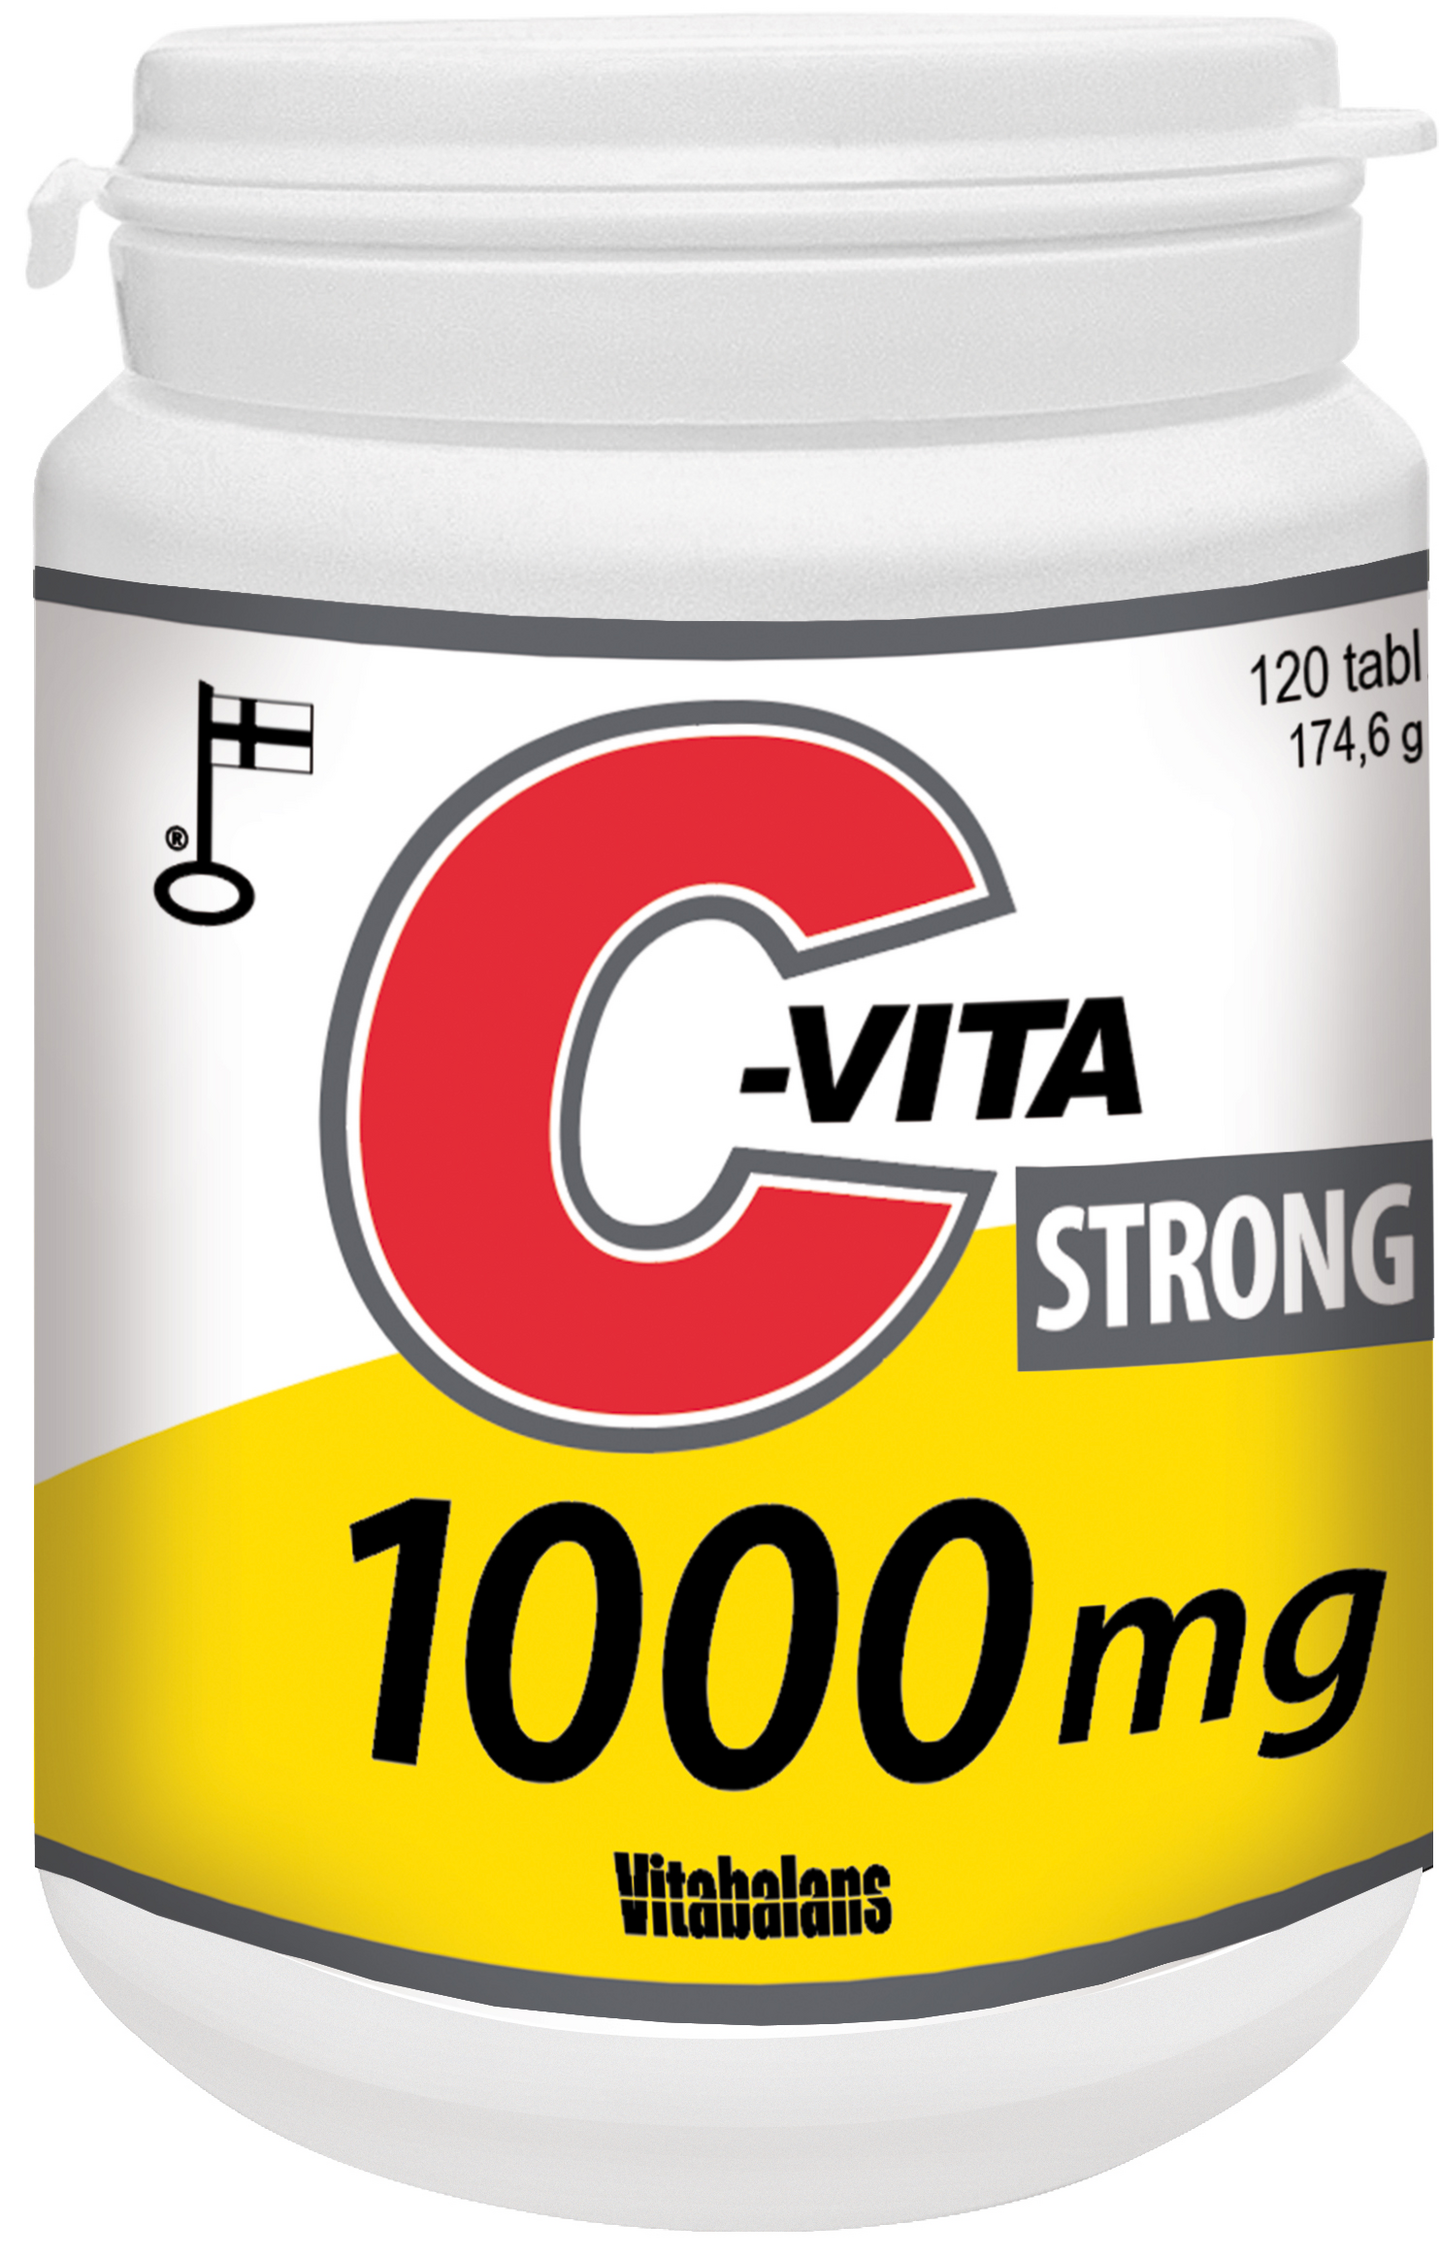 Vitabalans C-Vita Strong 1000mg 120kpl